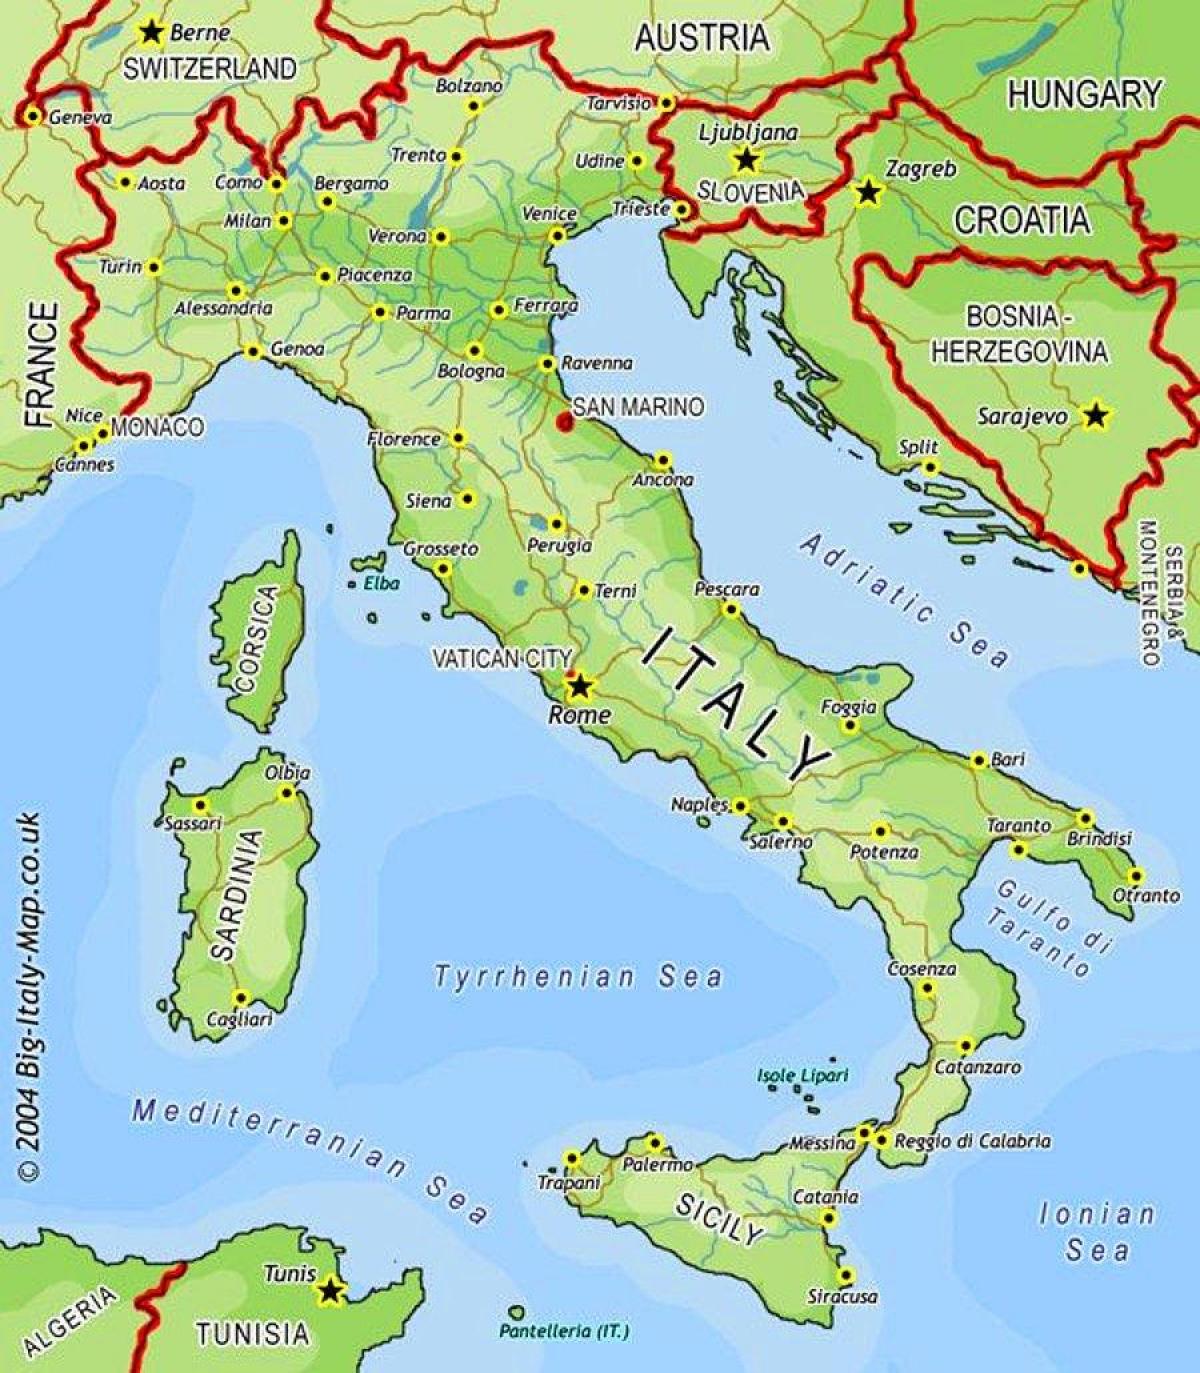 Mappa dell'Italia e dei paesi confinanti